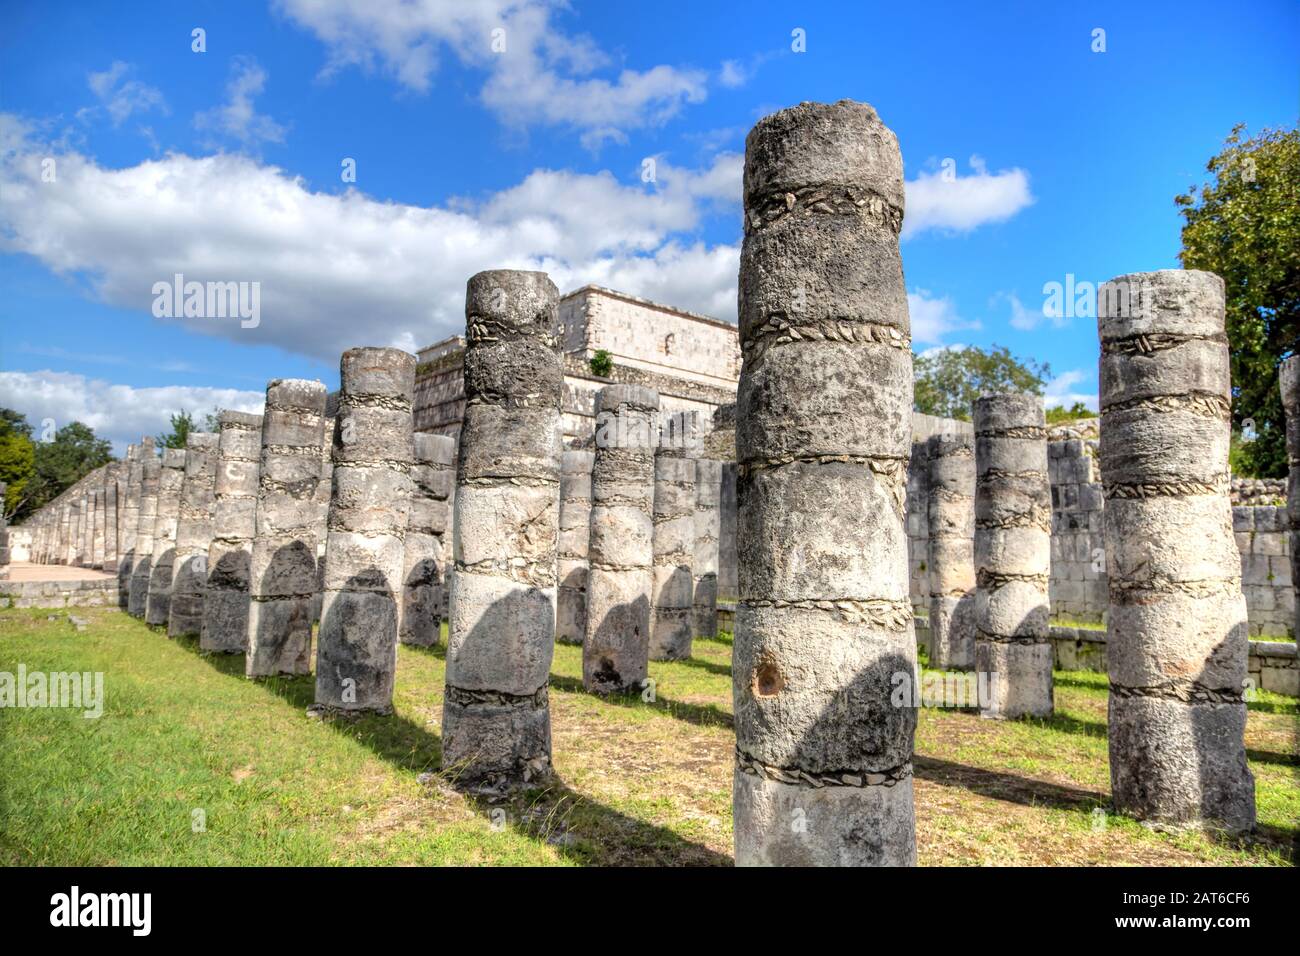 Ruines anciennes du Temple des Warriors sur le site archéologique maya de Chichen Itza, Yucatan, Mexique. Son nom provient des colonnes du pilier WIT Banque D'Images